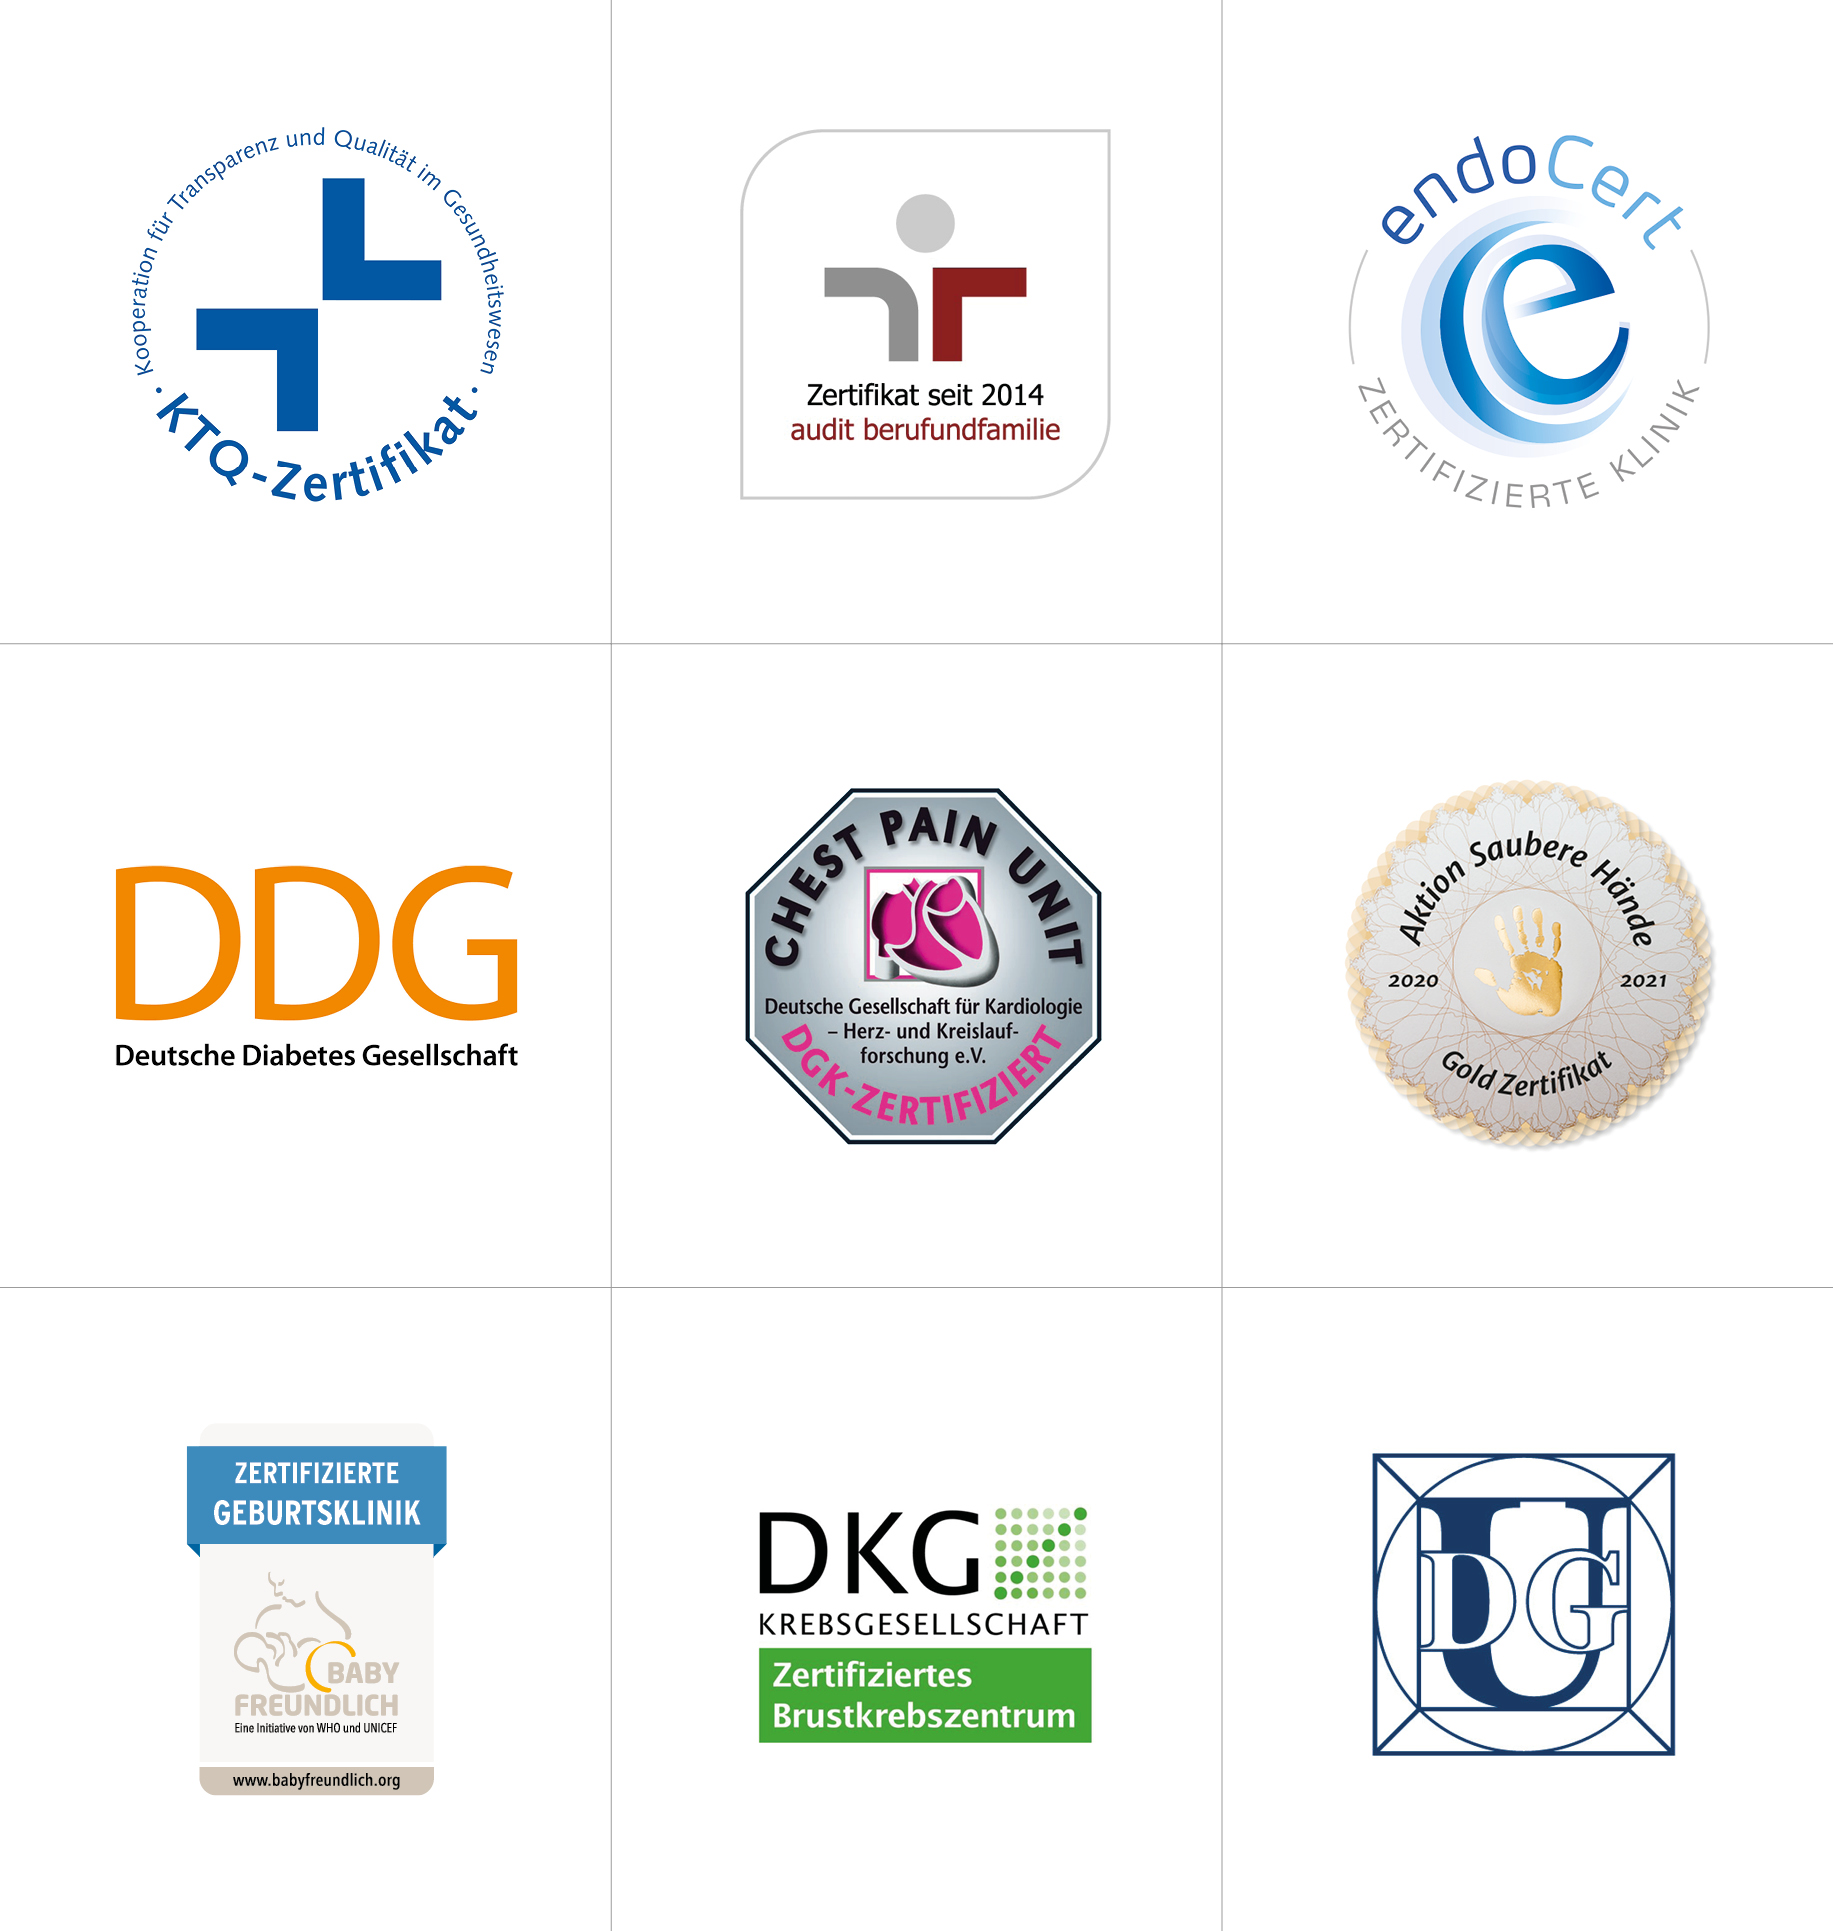 Bild Siloah St. Trudpert Klinikums, Qualitaetsmanagement, Zertifizierungen, Übersicht aller Auszeichnungen (Logos) 